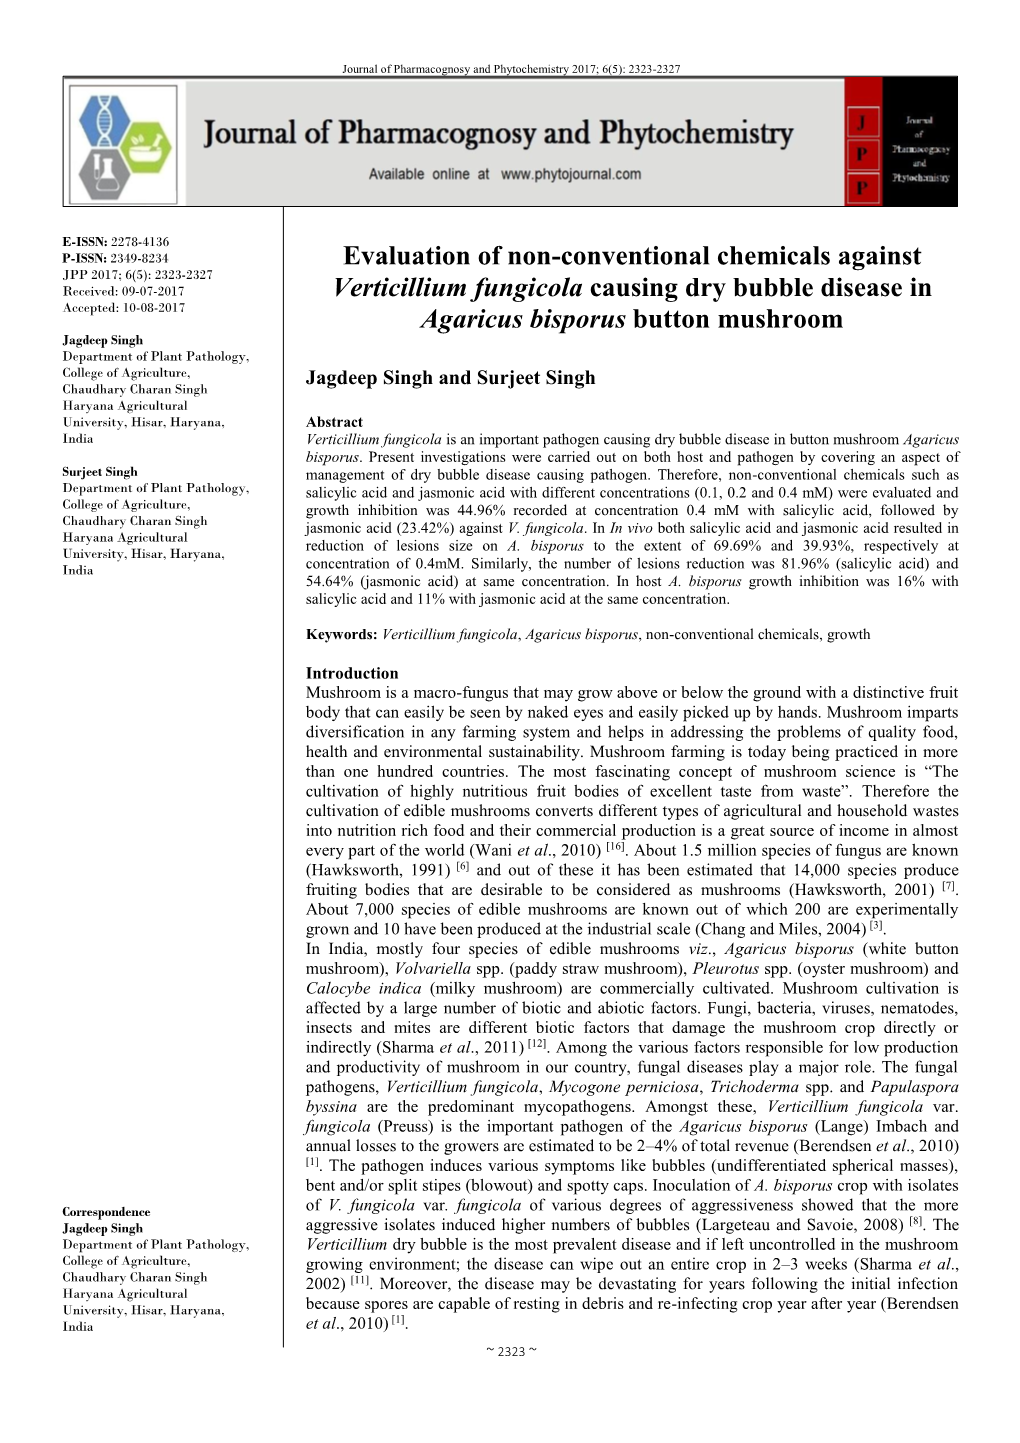 Evaluation of Non-Conventional Chemicals Against Verticillium Fungicola